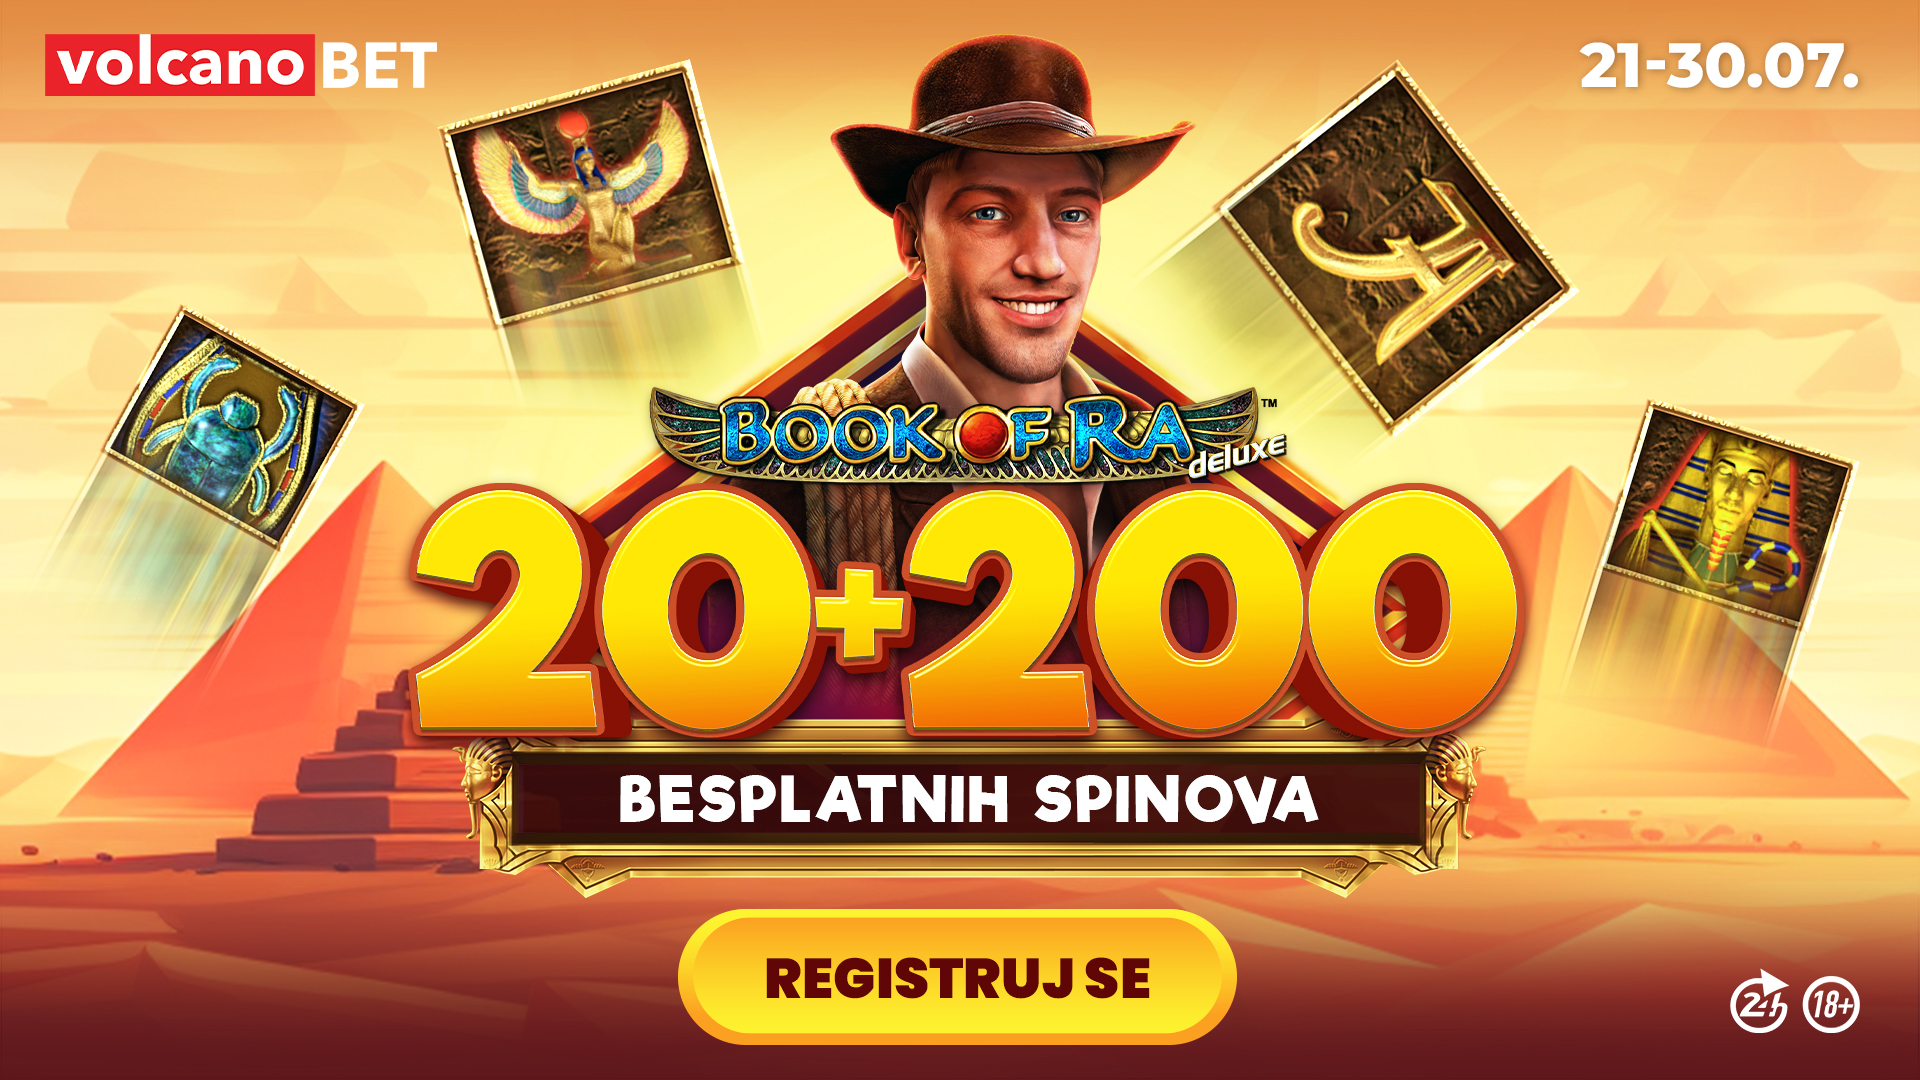 20+200 Besplatnih Spinova